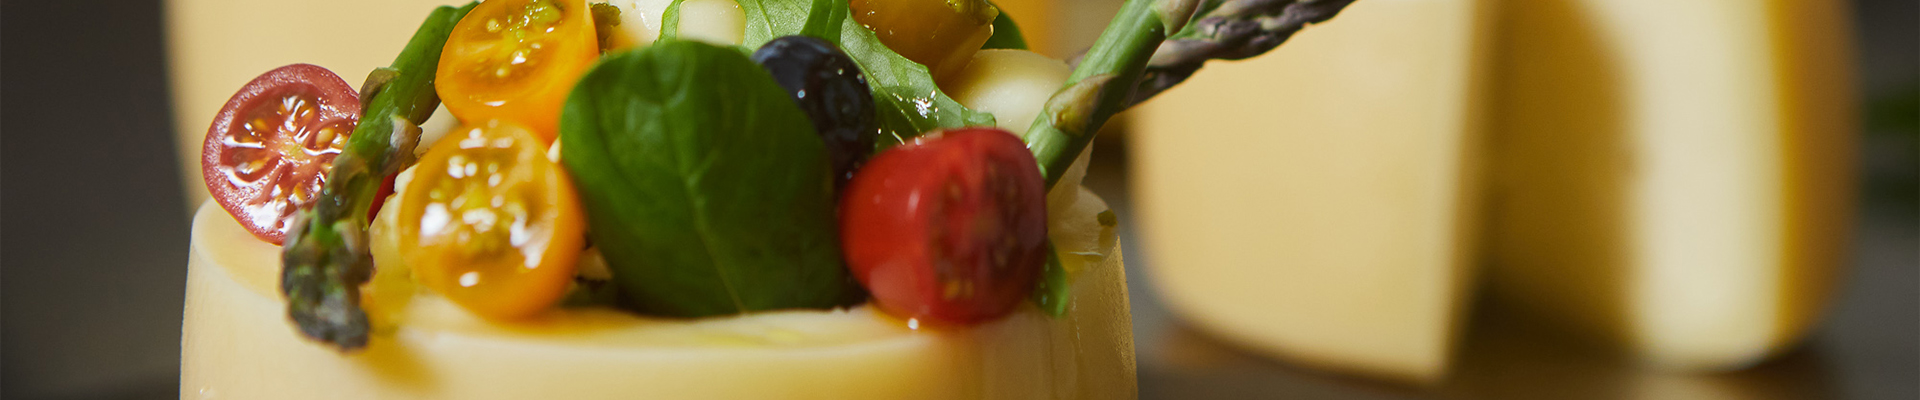 queso artesanal abredo con tomates y hierbas aromaticas